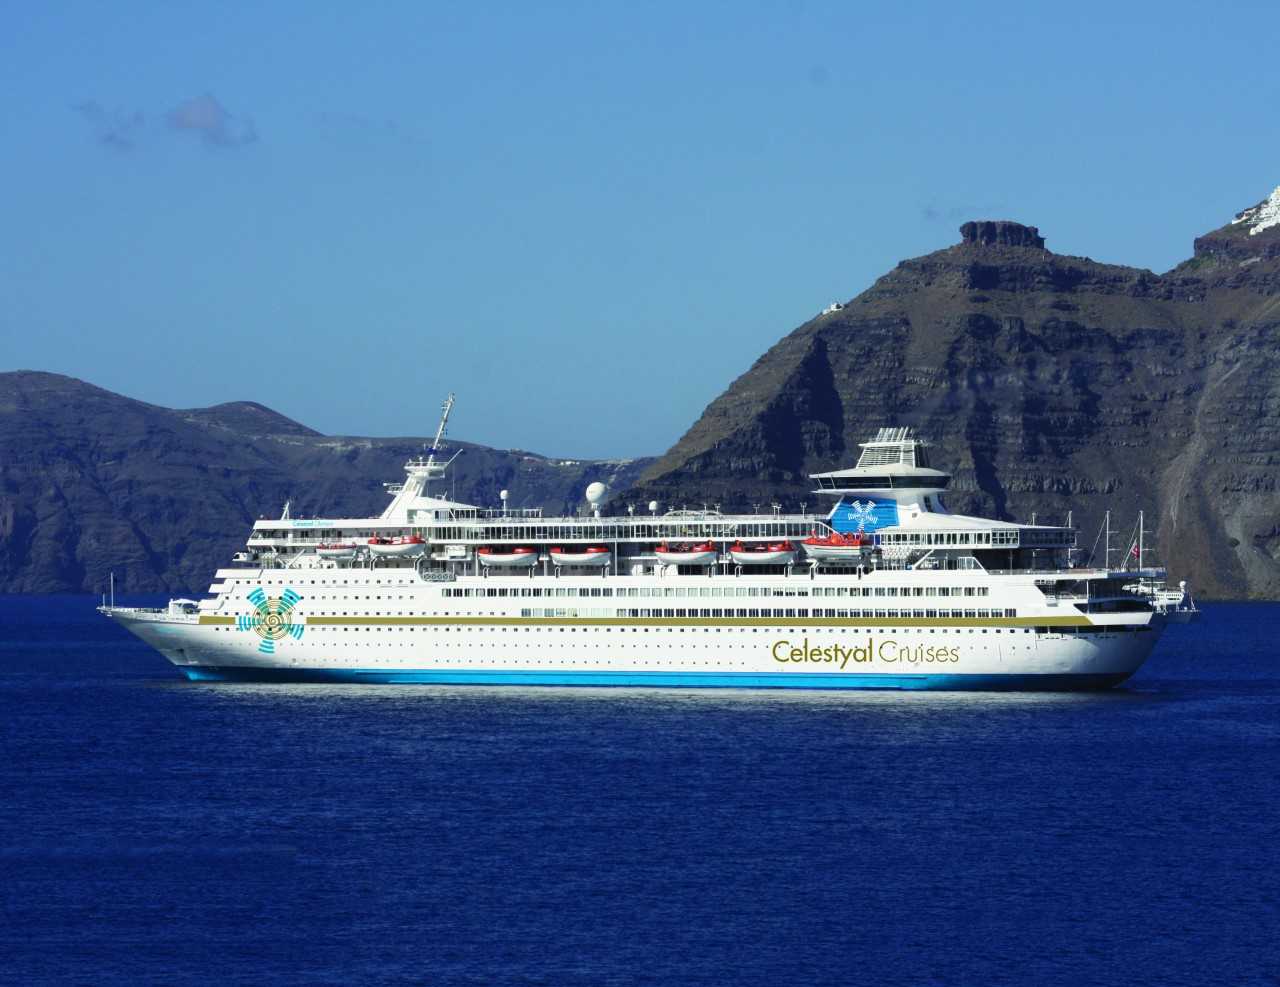 Ενεργό το ενδιαφέρον της Celestyal Cruises για το λιμάνι του Λαυρίου